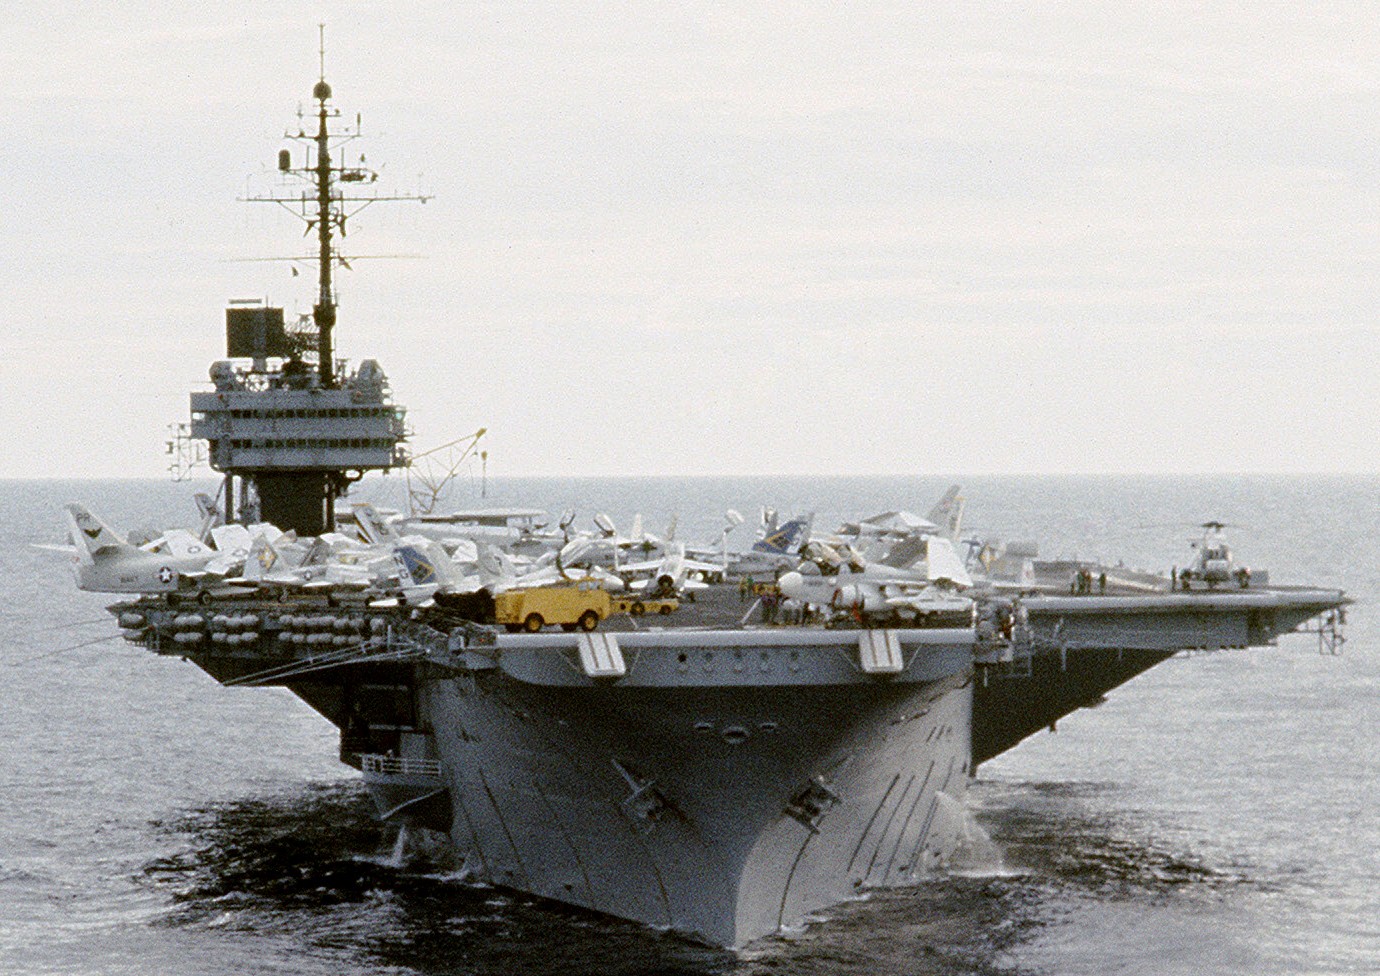 cv-64 uss constellation kitty hawk class aircraft carrier air wing cvw-9 us navy 60